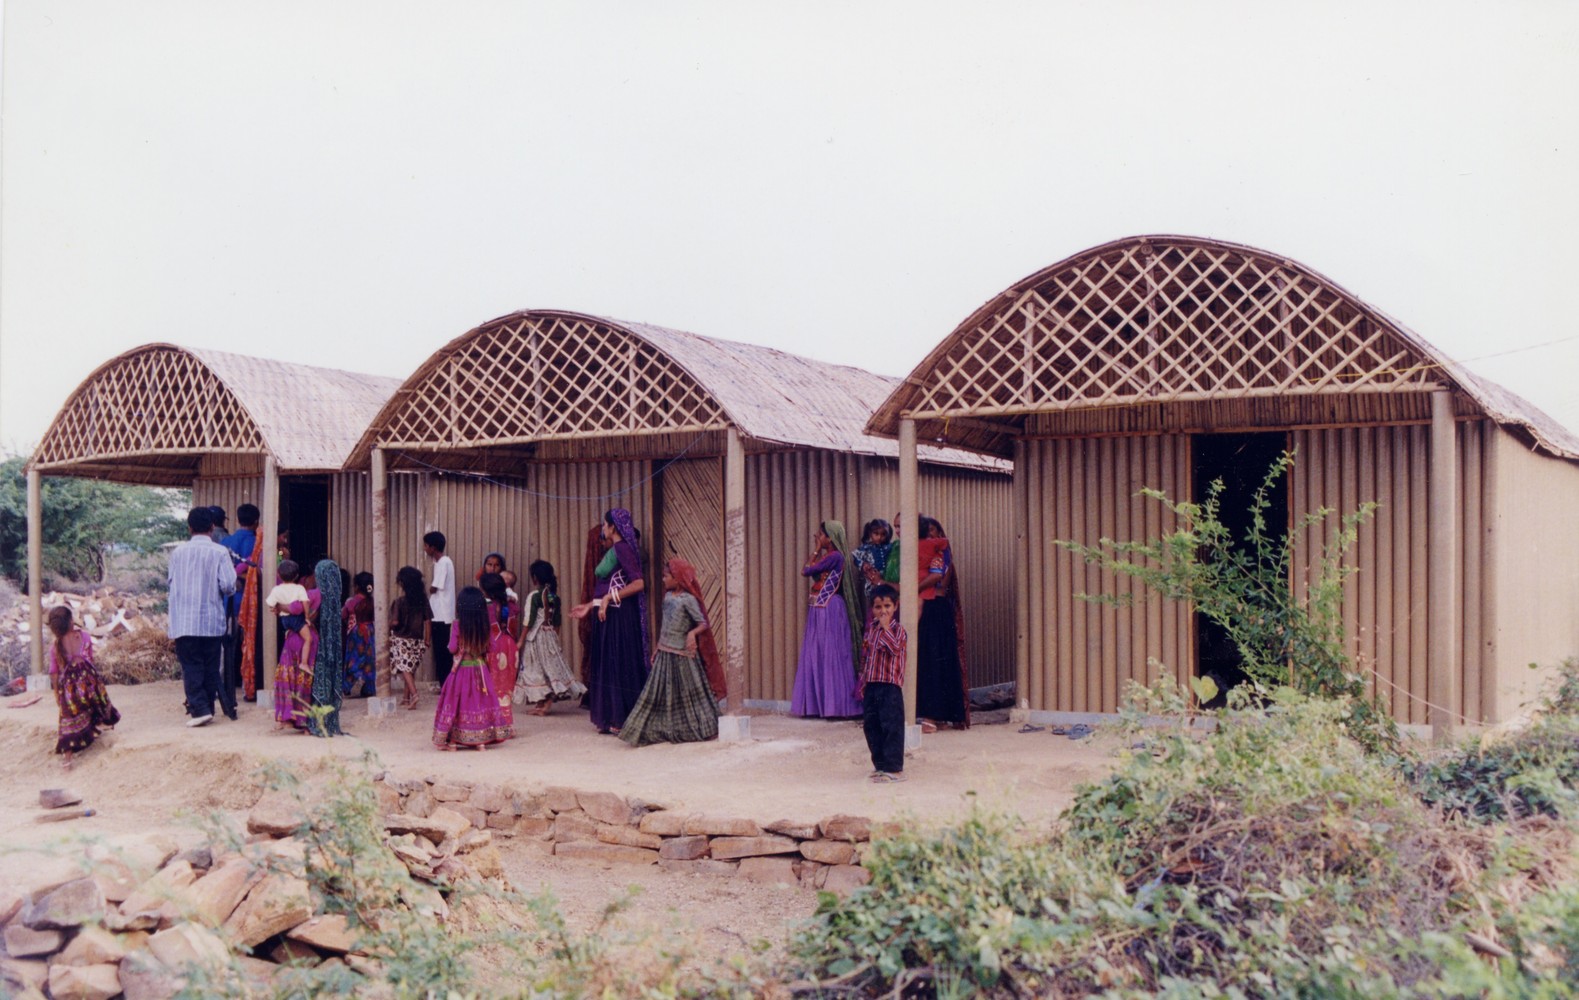 В 2001 году Сигэру Бан строил аналогичные дома для пострадавших от землетрясения в Индии. Поскольку это была бедная сельская местность, архитектор не мог использовать пластиковые элементы. Поэтому фундаментом хижин послужили камни домов, разрушенных землетрясением, а крышей &mdash; тростниковые рамы, проложенные соломенными подстилками
